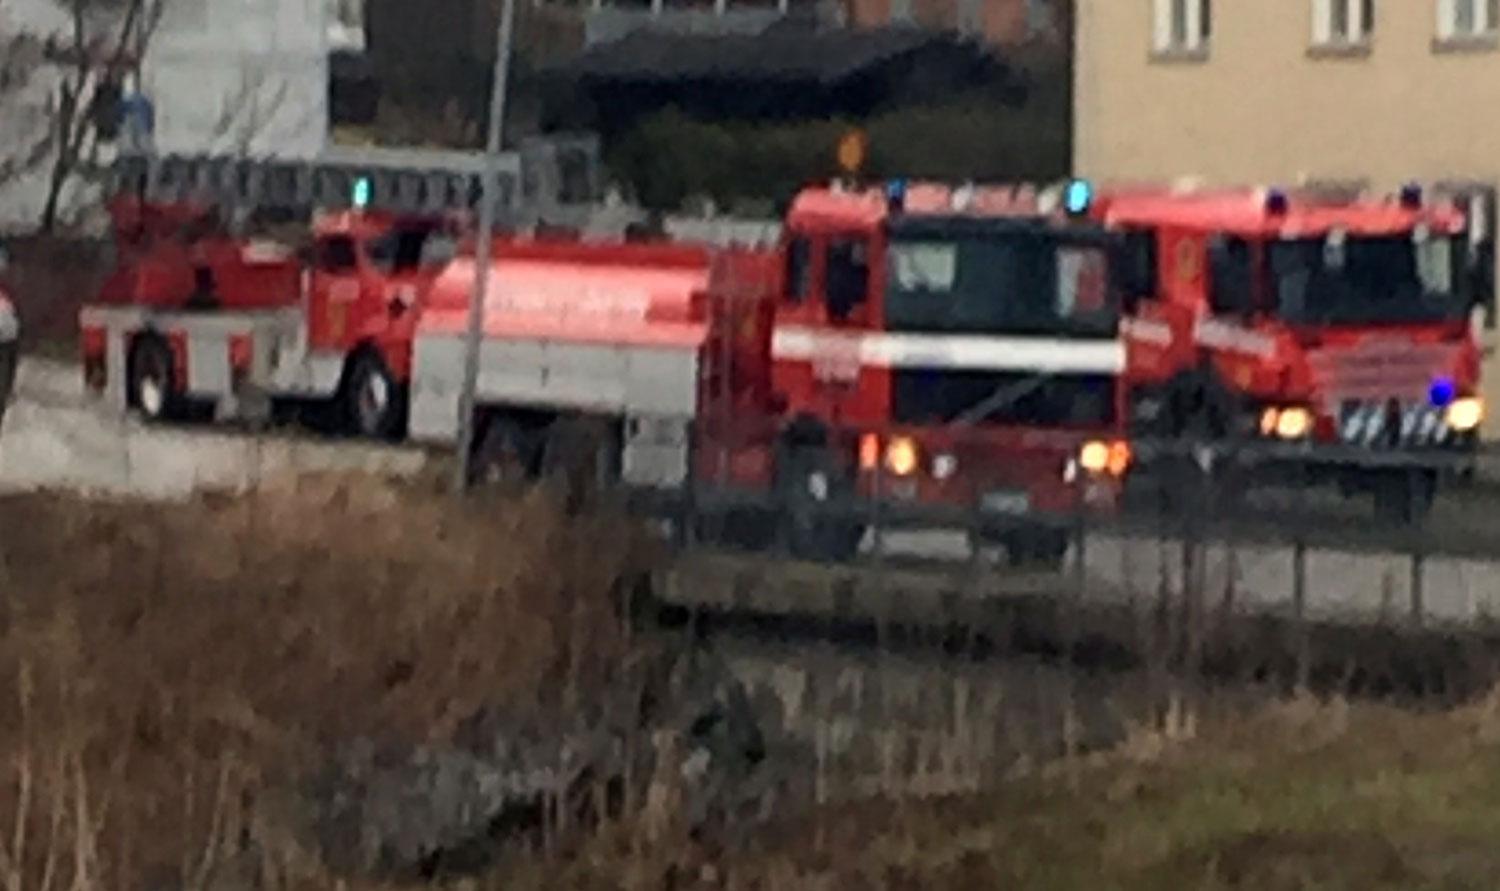 Brandkåren ryckte ut efter larm om brand i en lägenhet i Kopparberg.